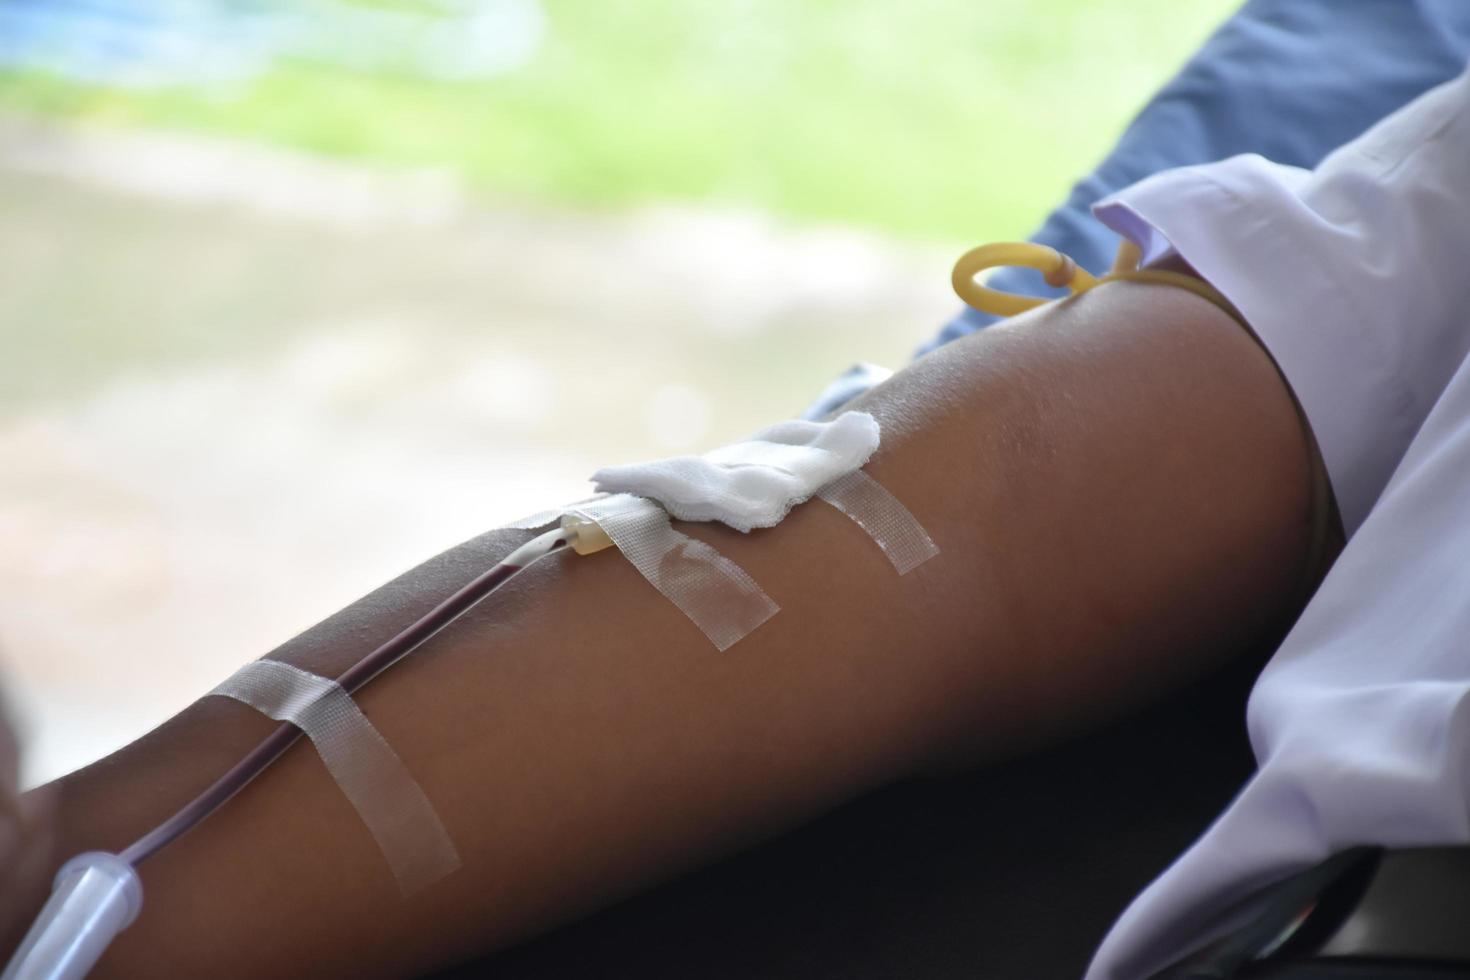 el brazo de un donante de sangre, que tiene una aguja y un tubo de plástico transparente para llevar sangre a una bolsa de sangre de la cruz roja. foto